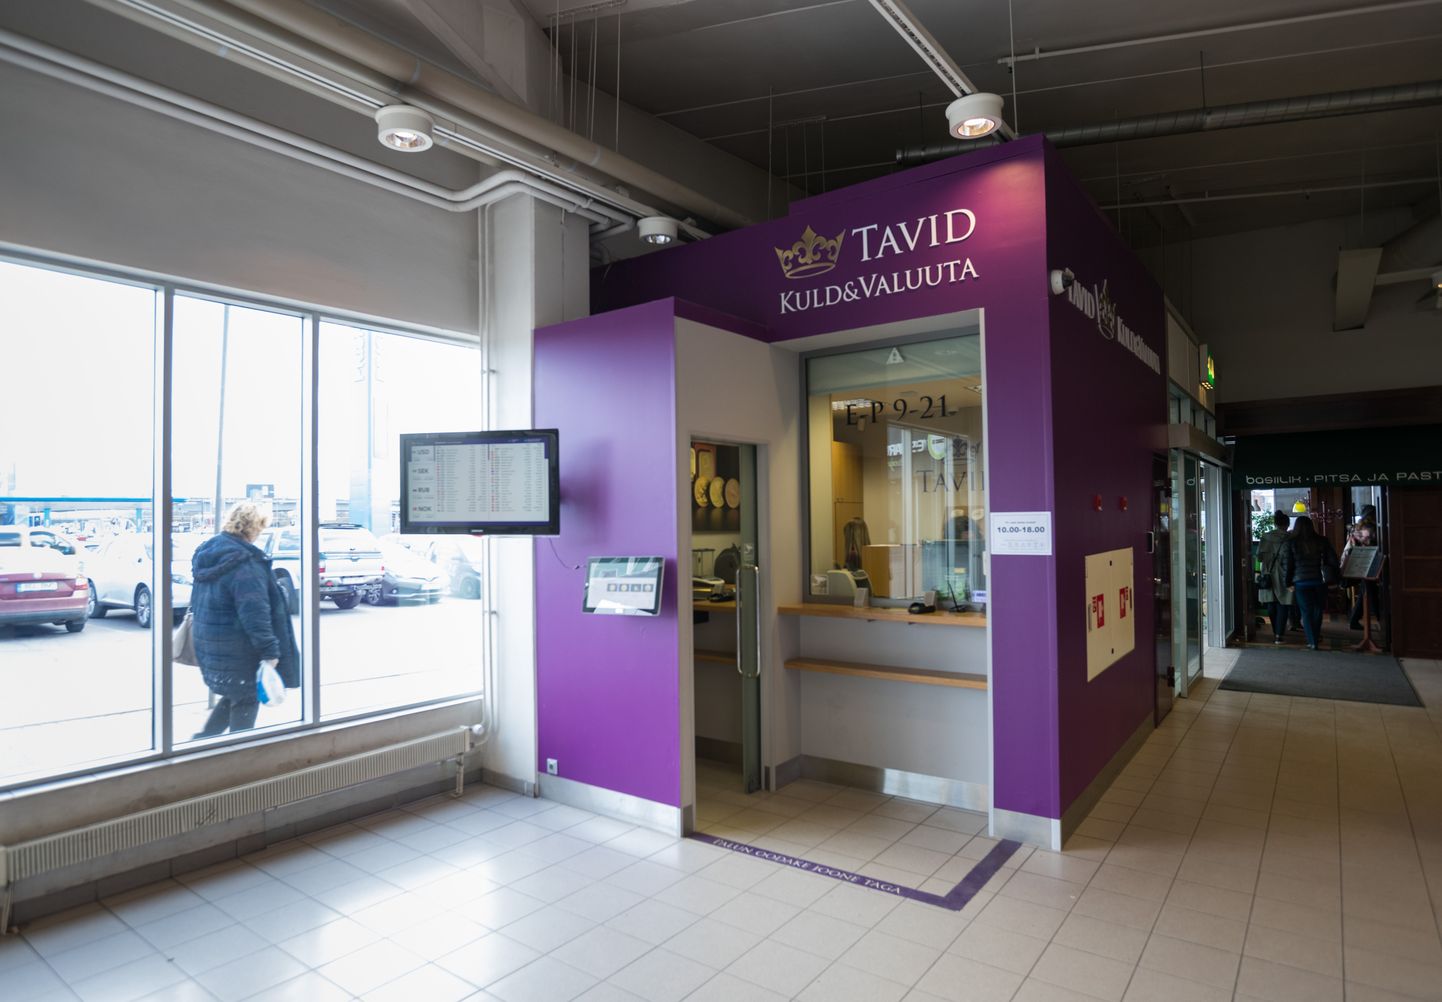 Kulla- ja valuutapoe Tavid filiaal Sikupilli kaubanduskeskuses.